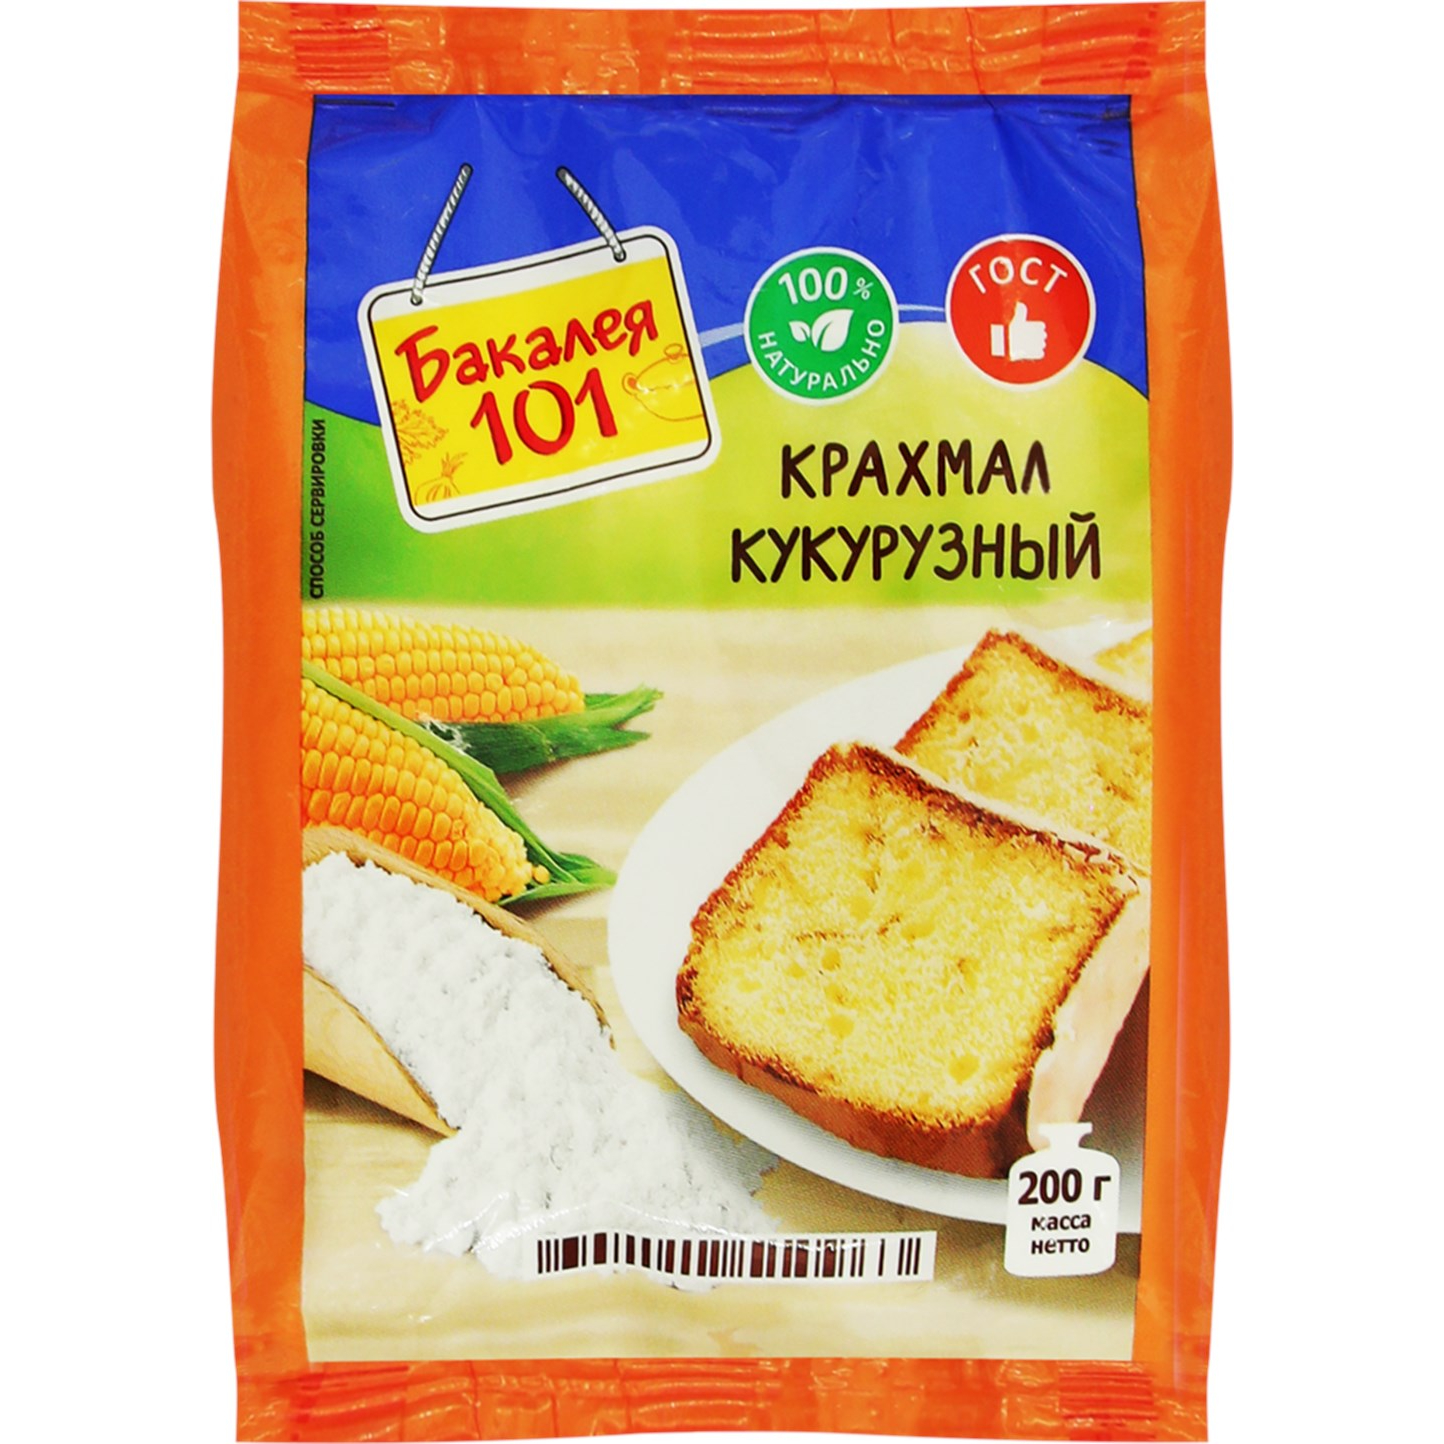 Крахмал кукурузный Русский продукт Бакалея 101 200 г лимонная кислота русский продукт бакалея 101 250 г